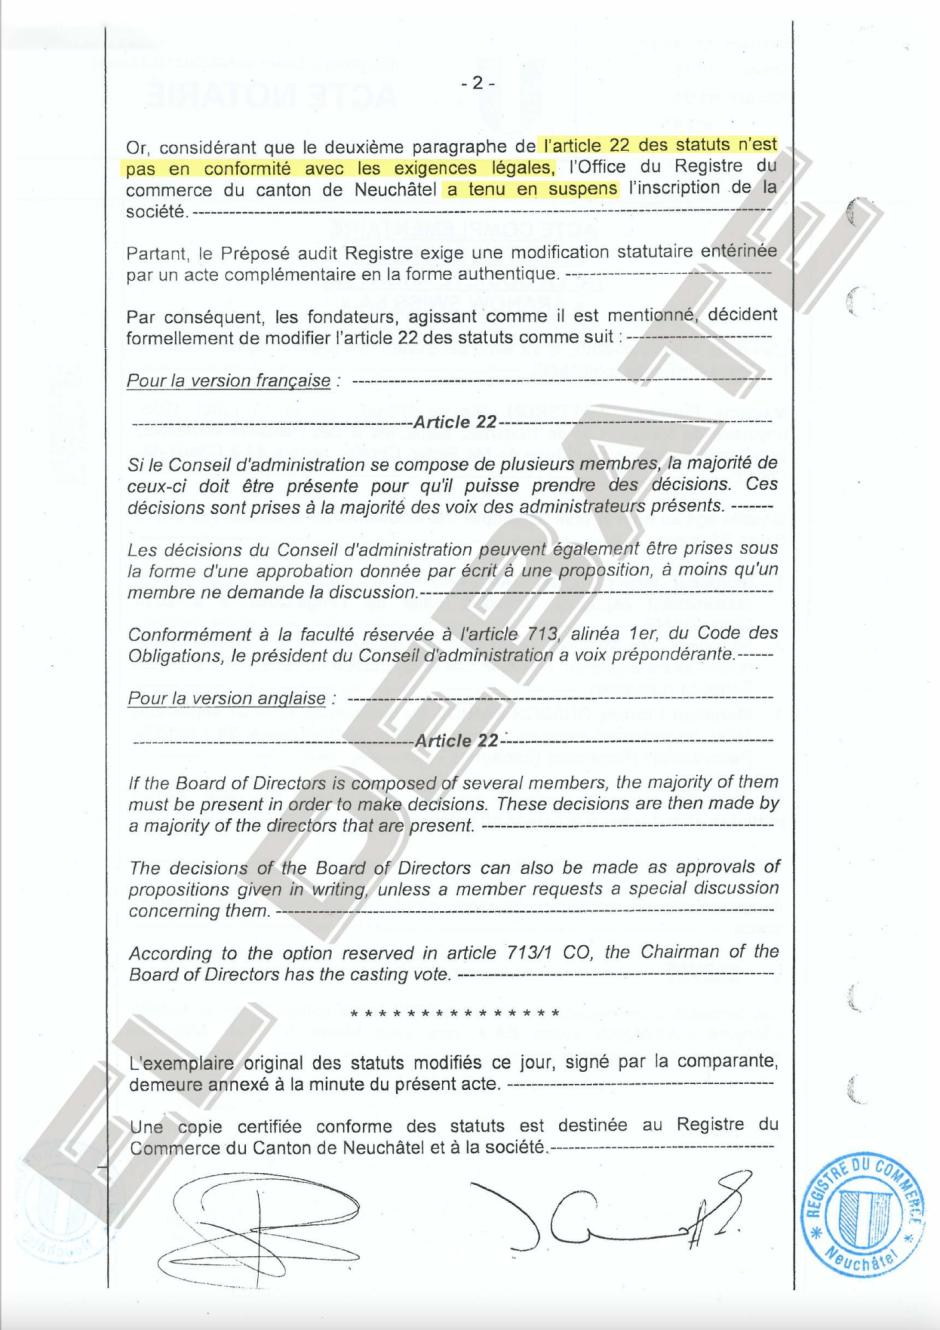 Acta notarial complementaria de la offshore de Jordi Cuixart (II)